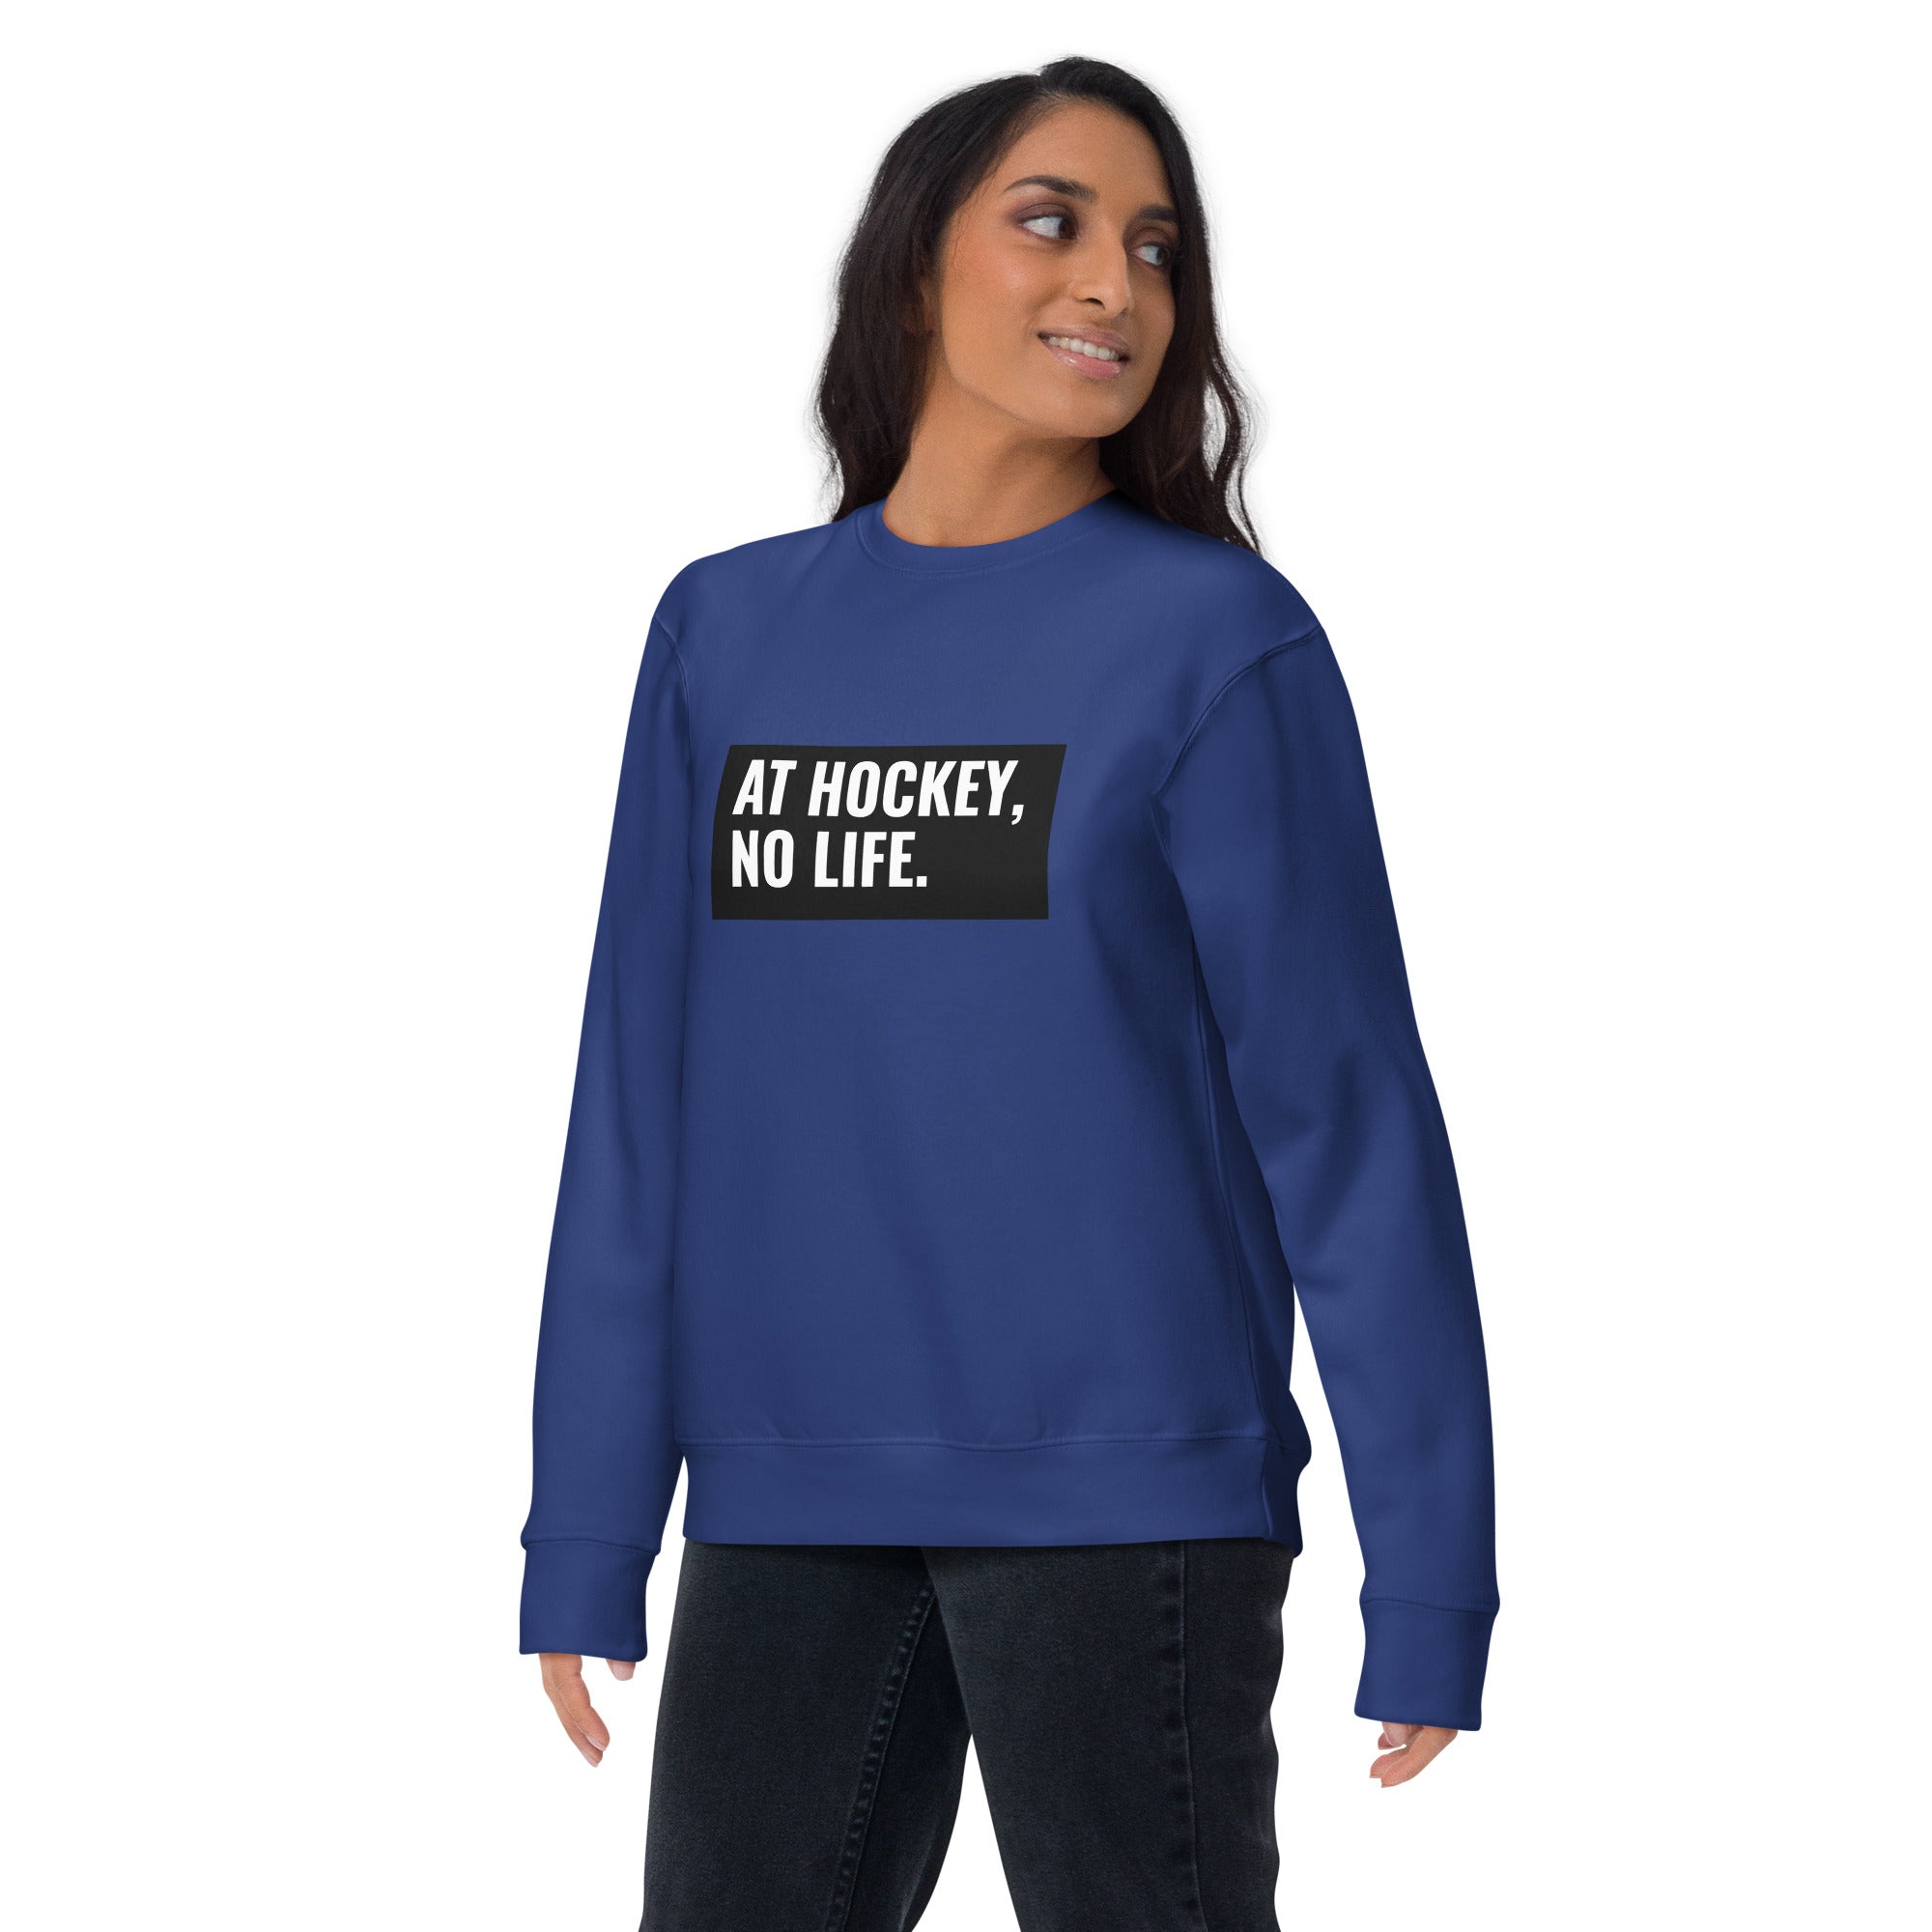 At Hockey, No Life Women's Premium Sweatshirt